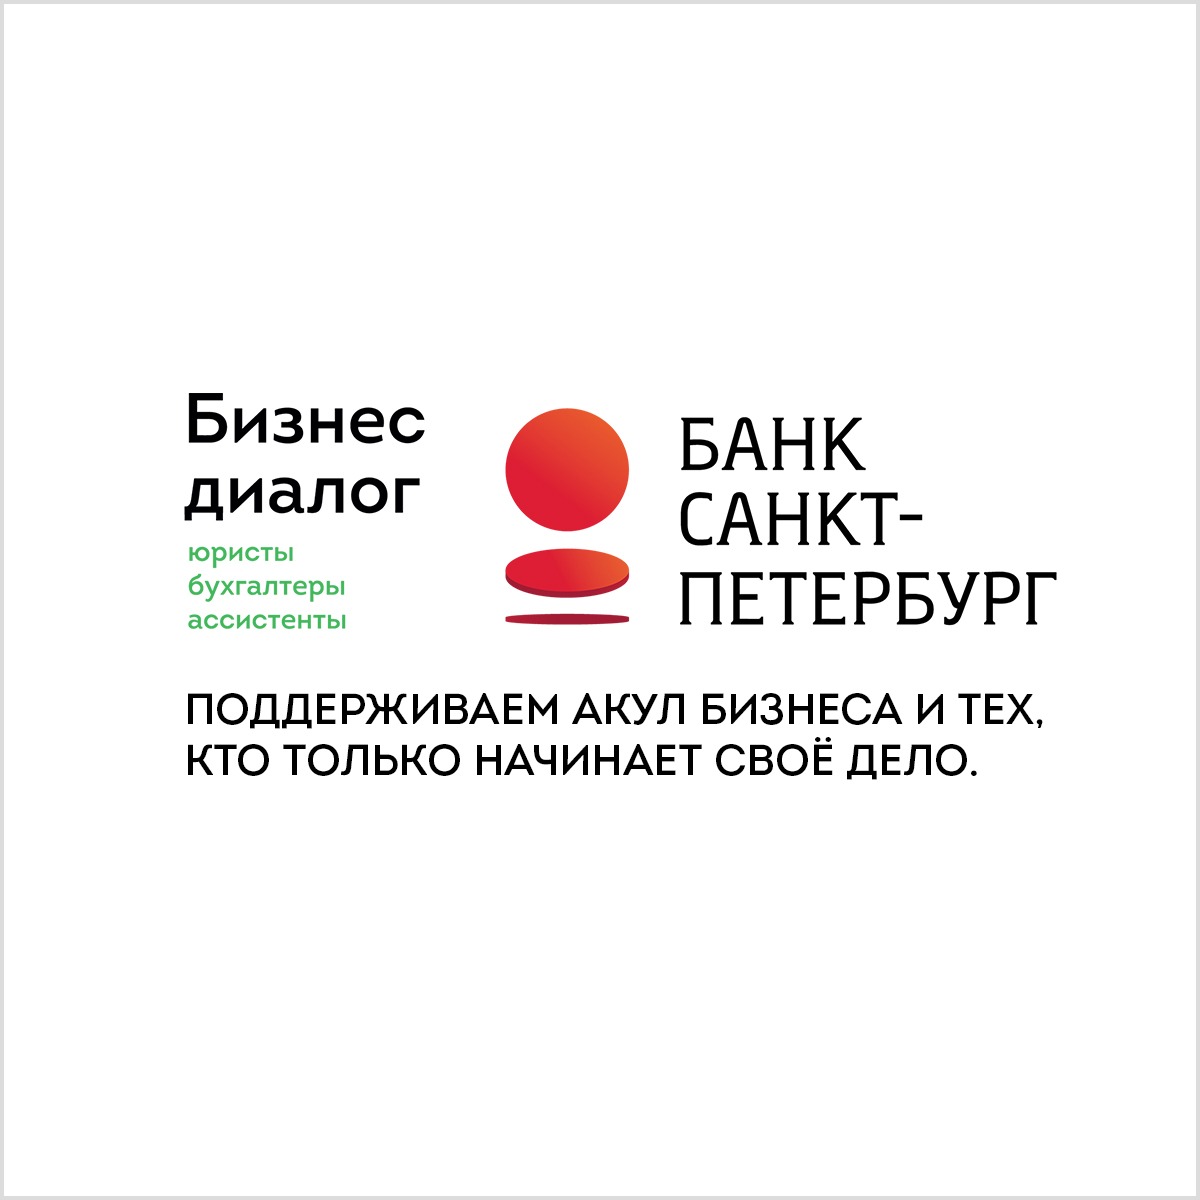 «Бизнес диалог» - официальный партнер Банка «Санкт-Петербург».